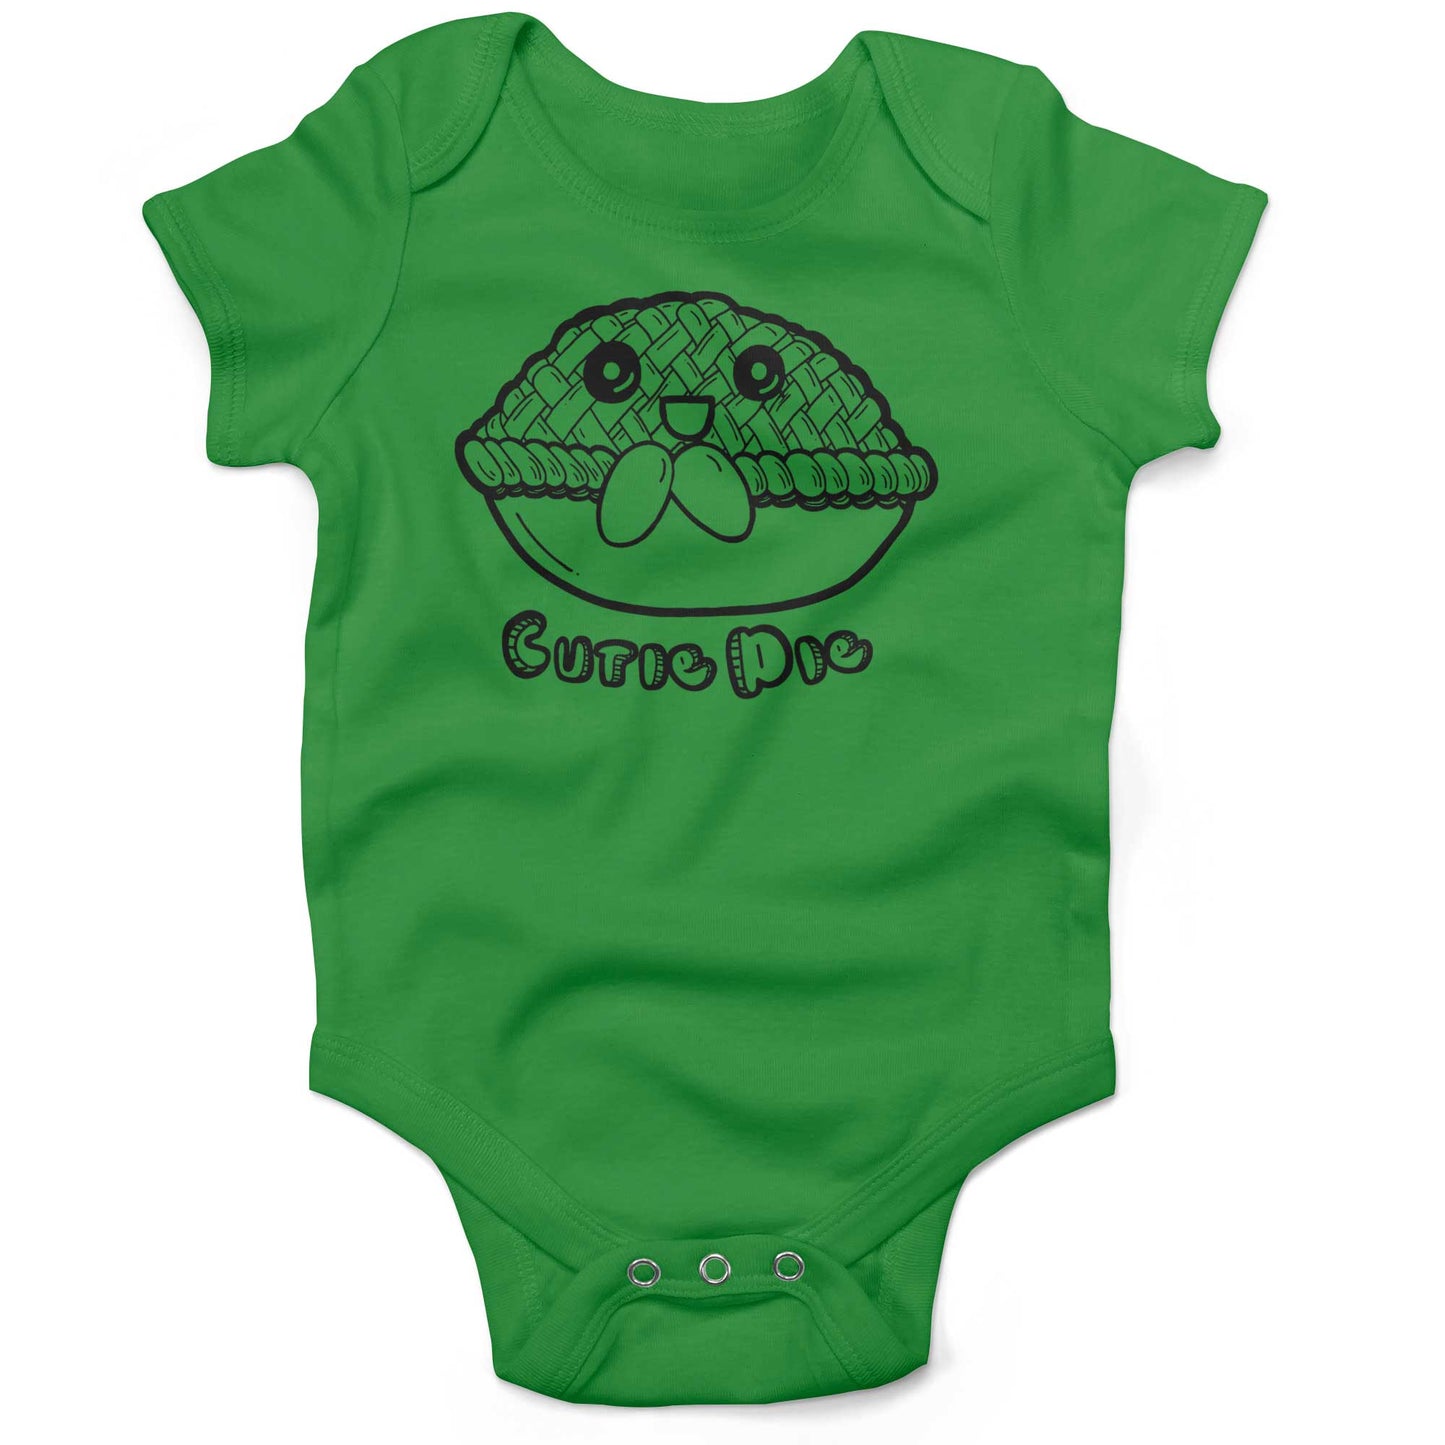 Cutie Pie Infant Bodysuit or Raglan Tee-Grass Green-3-6 months